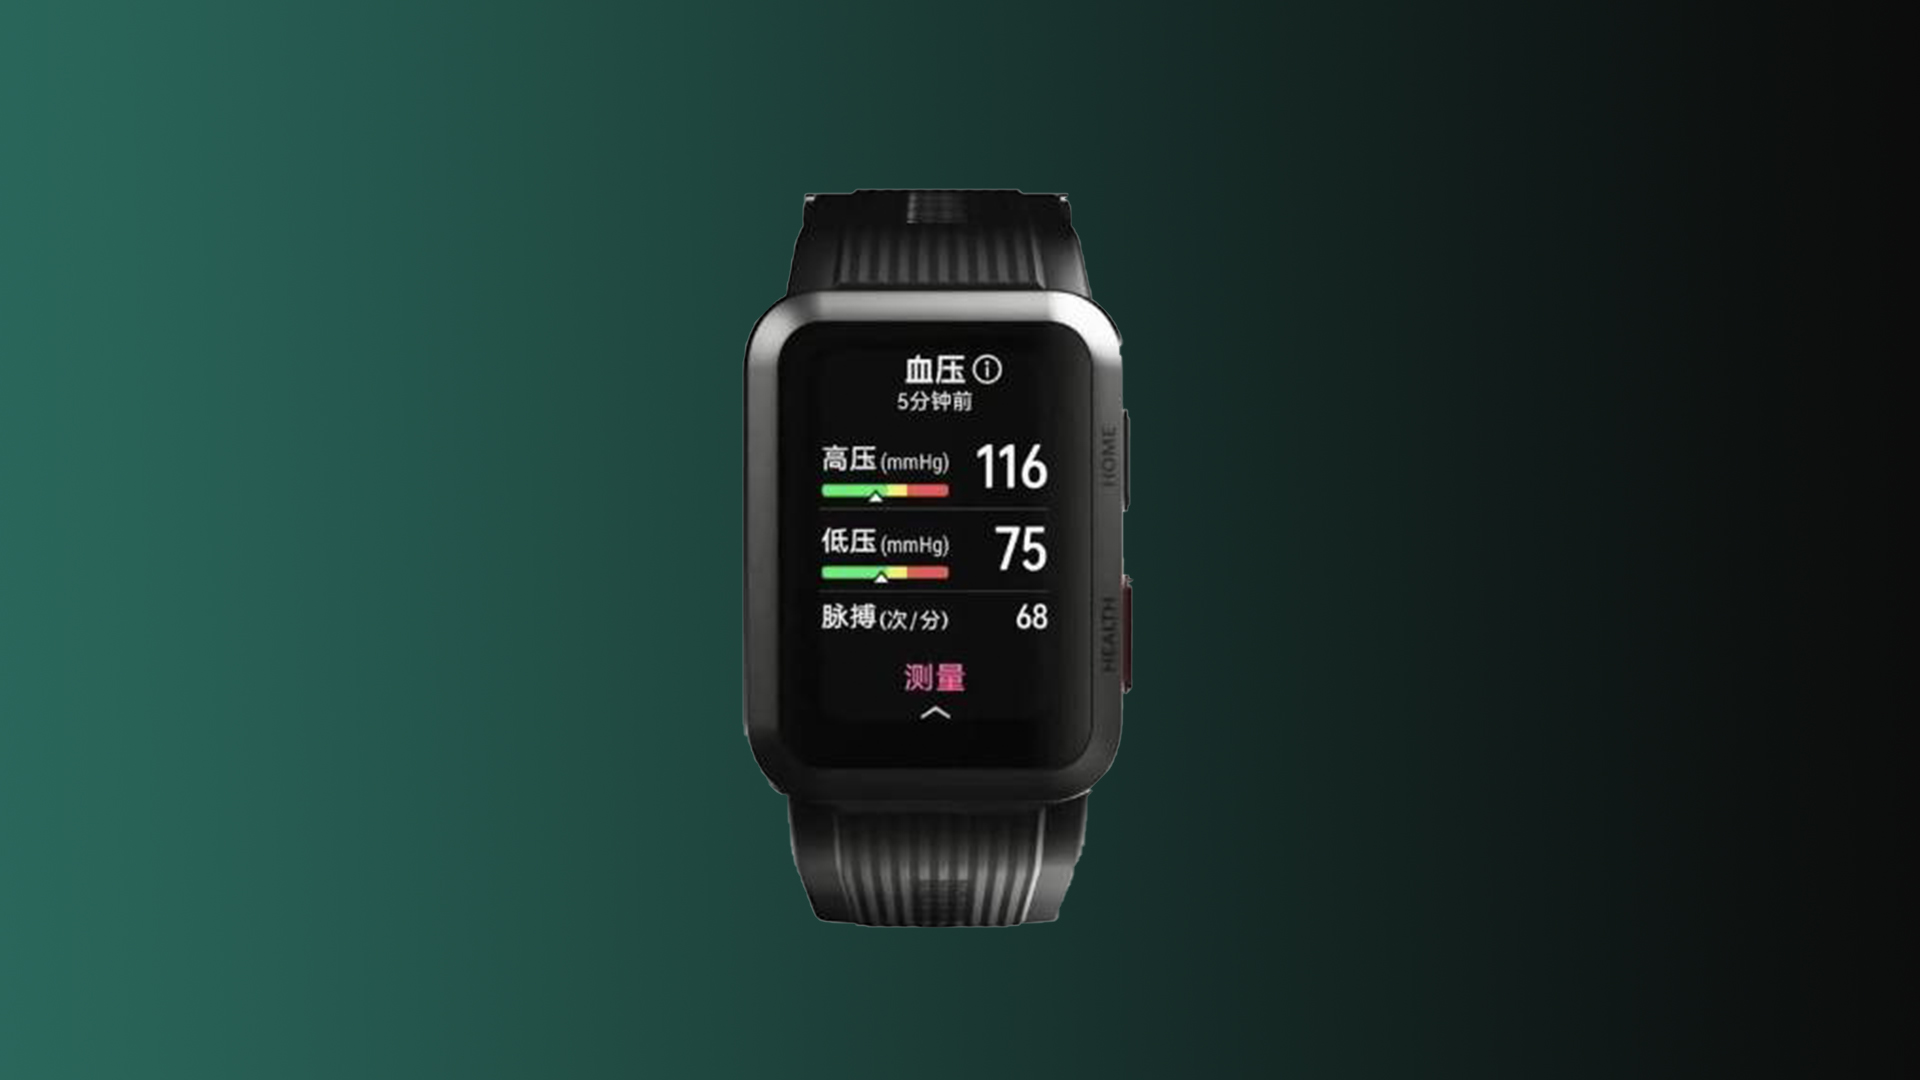 Probamos el Huawei Watch D: el reloj que mide la tensión